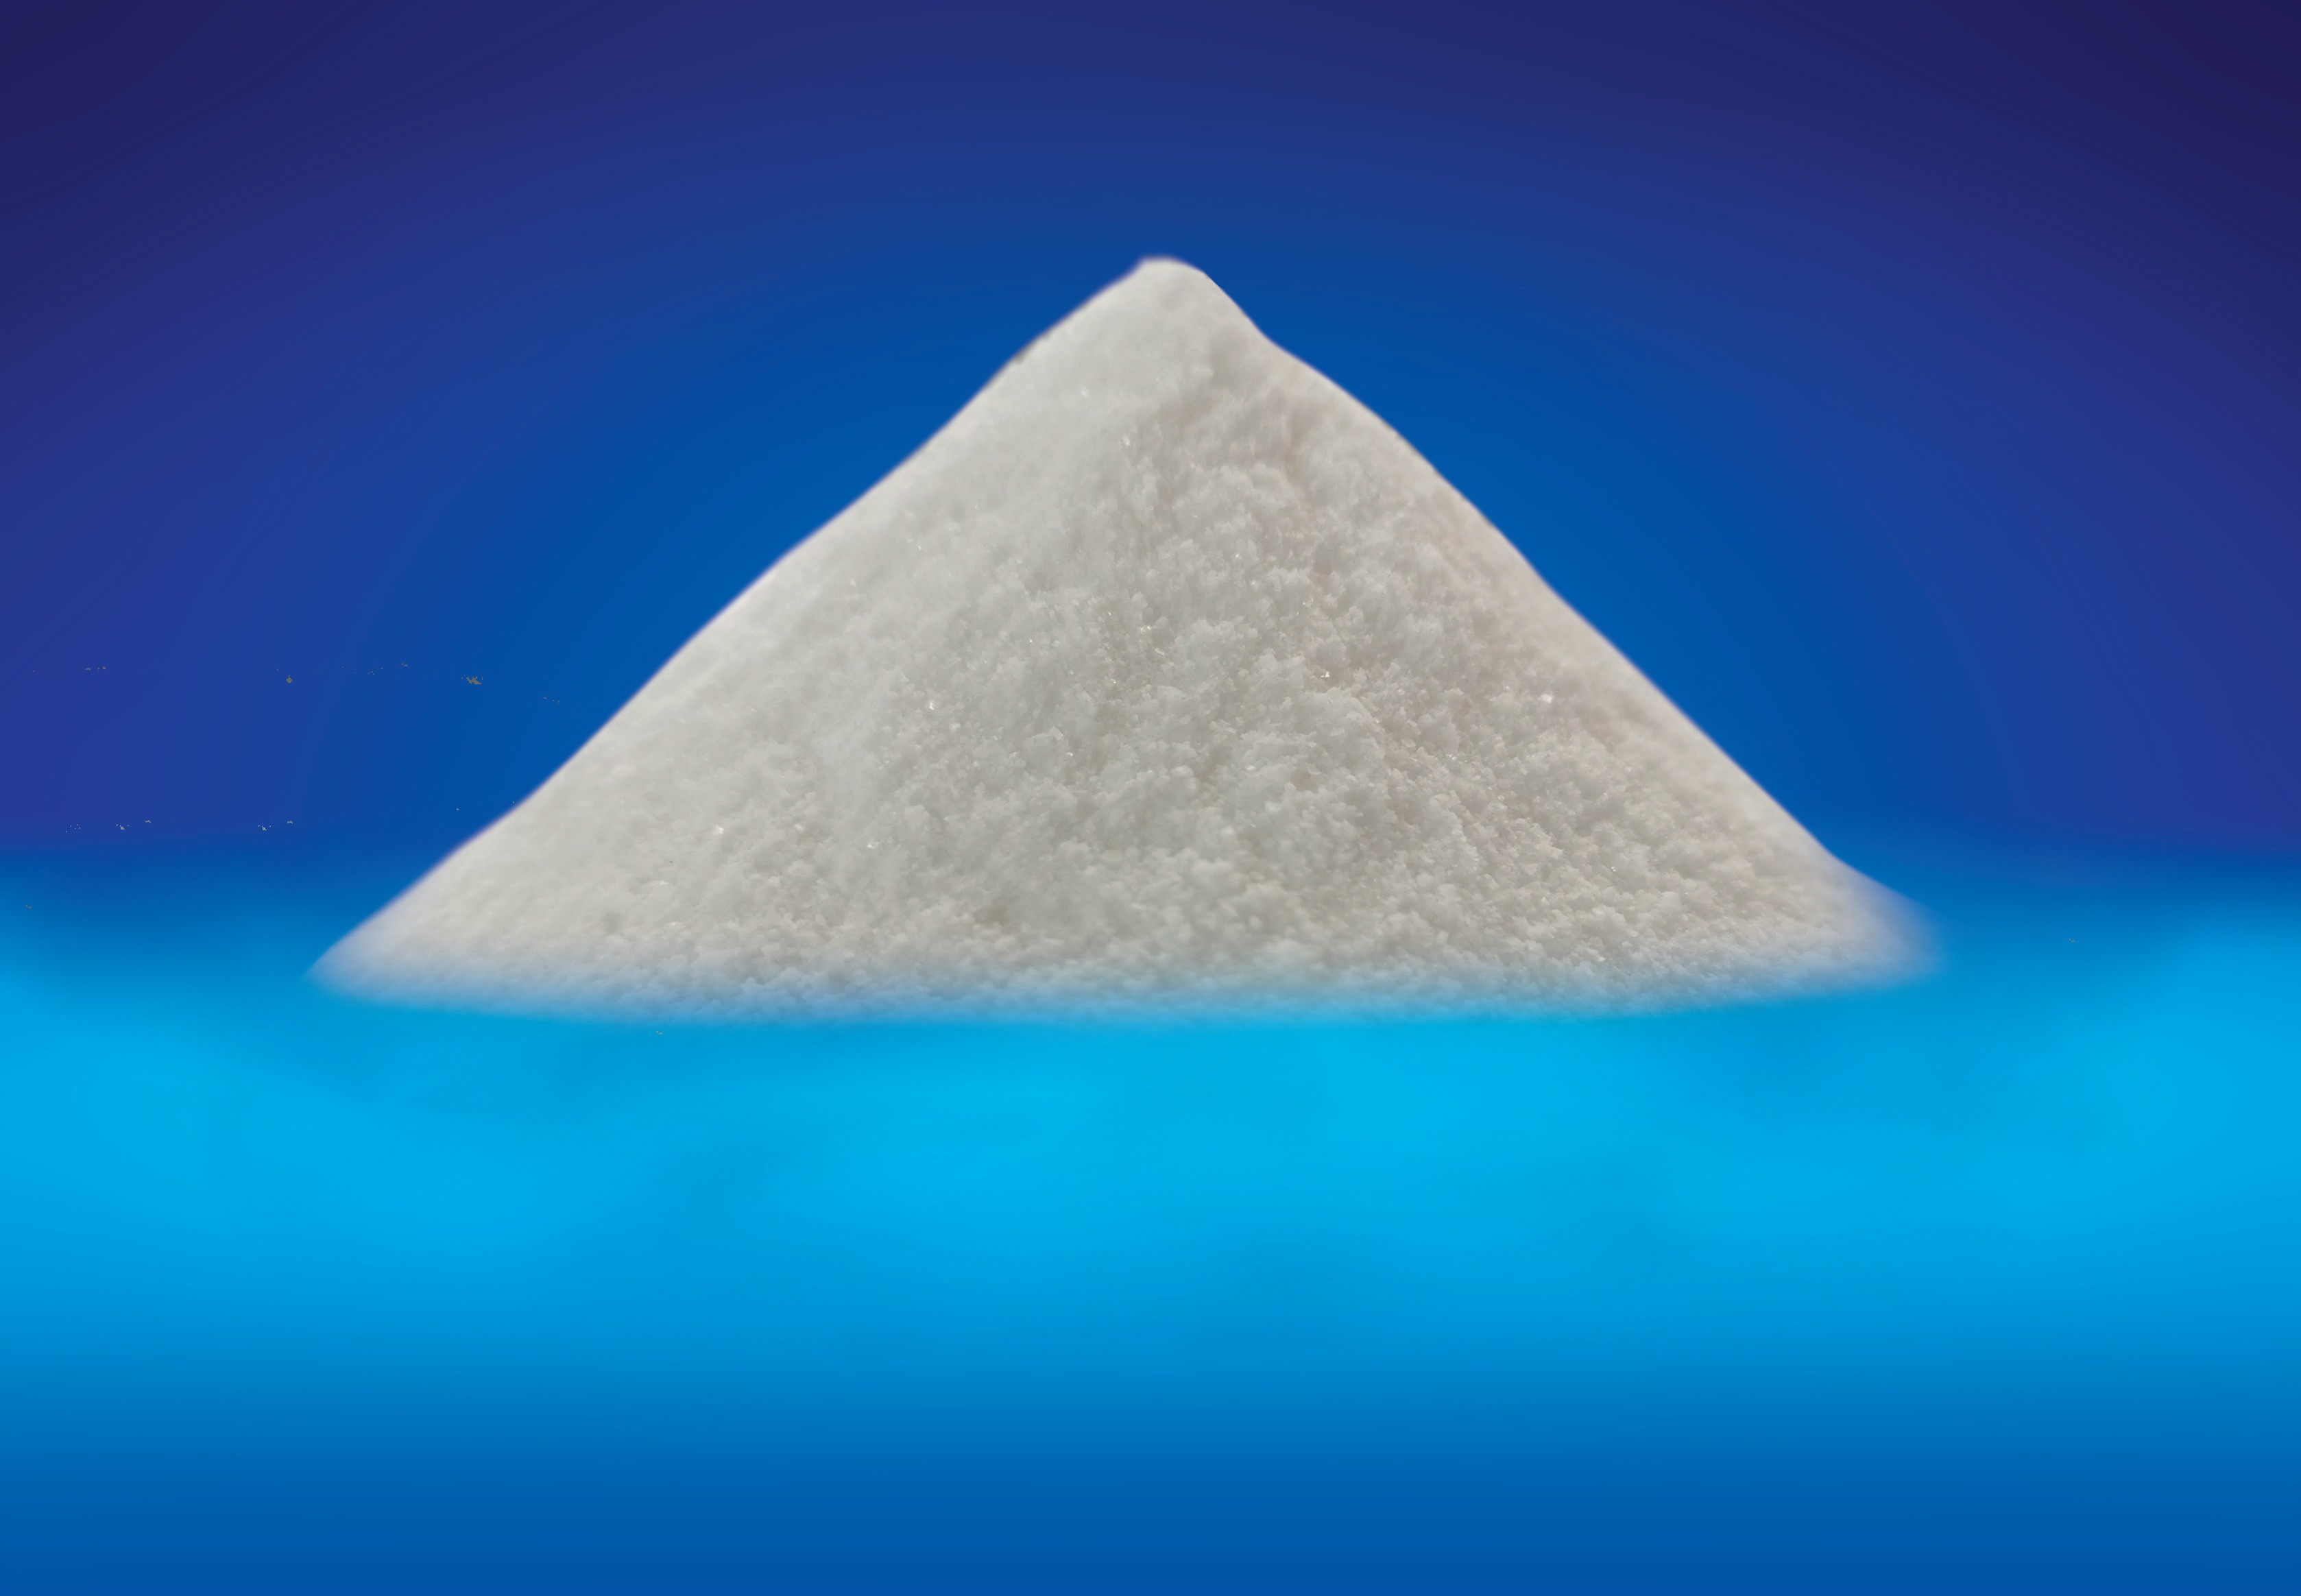 Sodium Bicarbonate White Crystalline Powder Animal Feed Additive